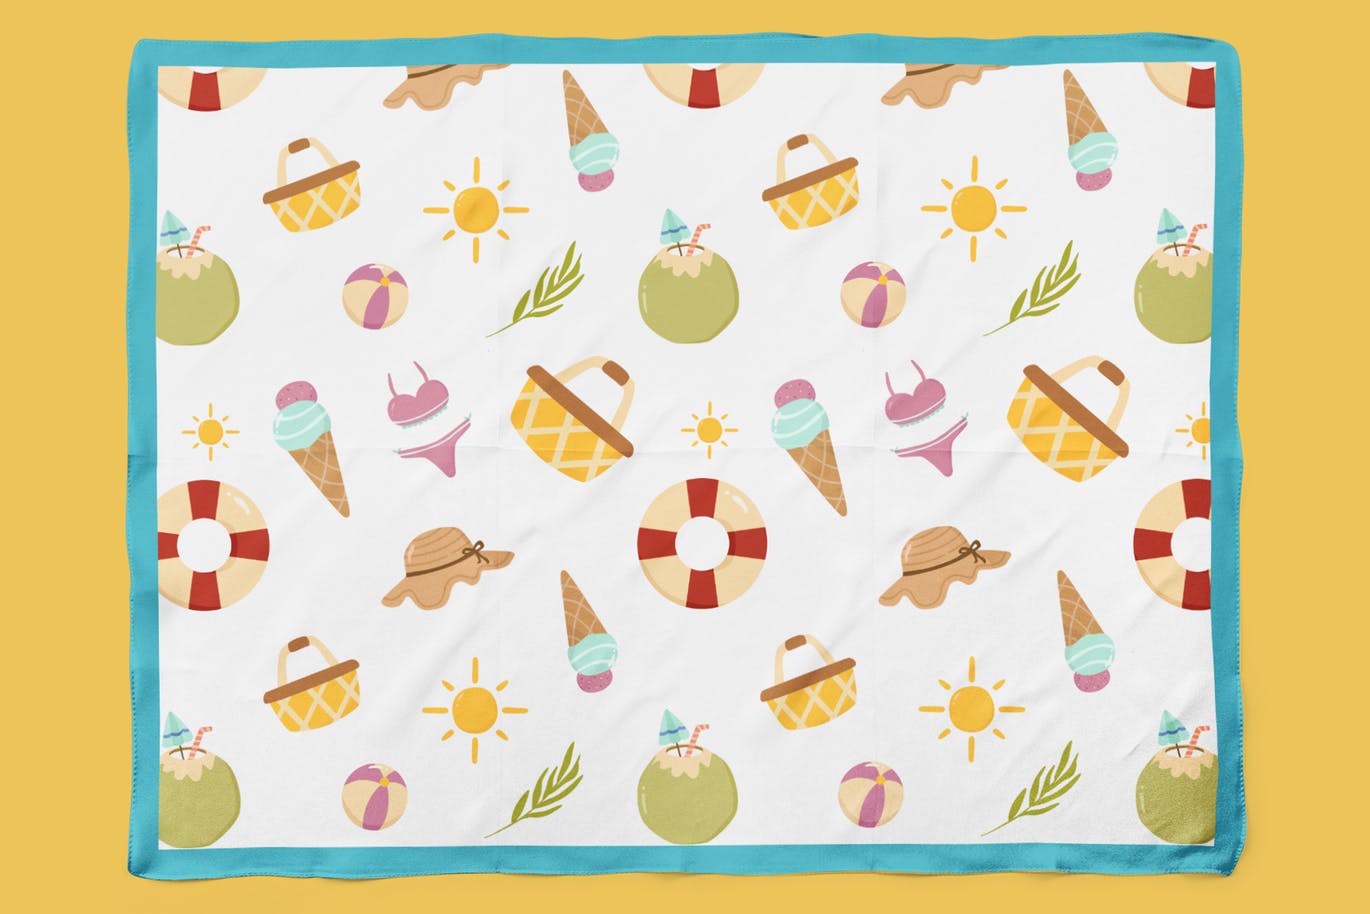 夏日缤纷元素手绘图案无缝背景素材 Playful Summer Seamless Patterns插图3